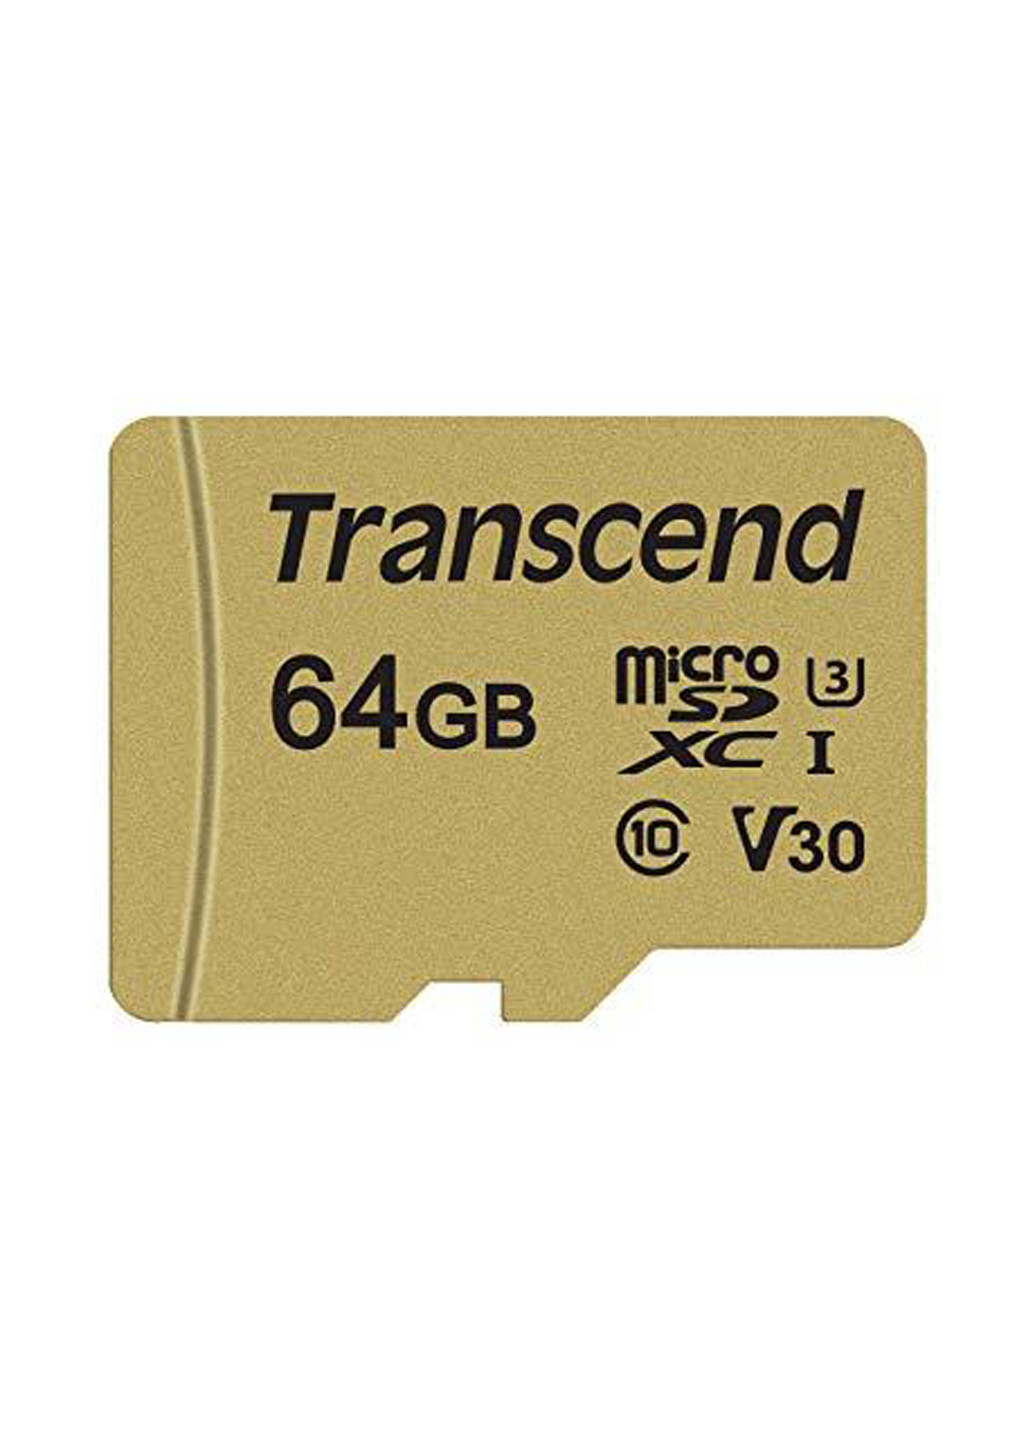 Карта пам'яті microSDXC 64GB C10 UHS-I U3 (R95 / W60MB / s) + SD-adapter (TS64GUSD500S) Transcend карта памяти transcend microsdxc 64gb c10 uhs-i u3 (r95/w60mb/s) + sd-adapter (ts64gusd500s) (130843149)